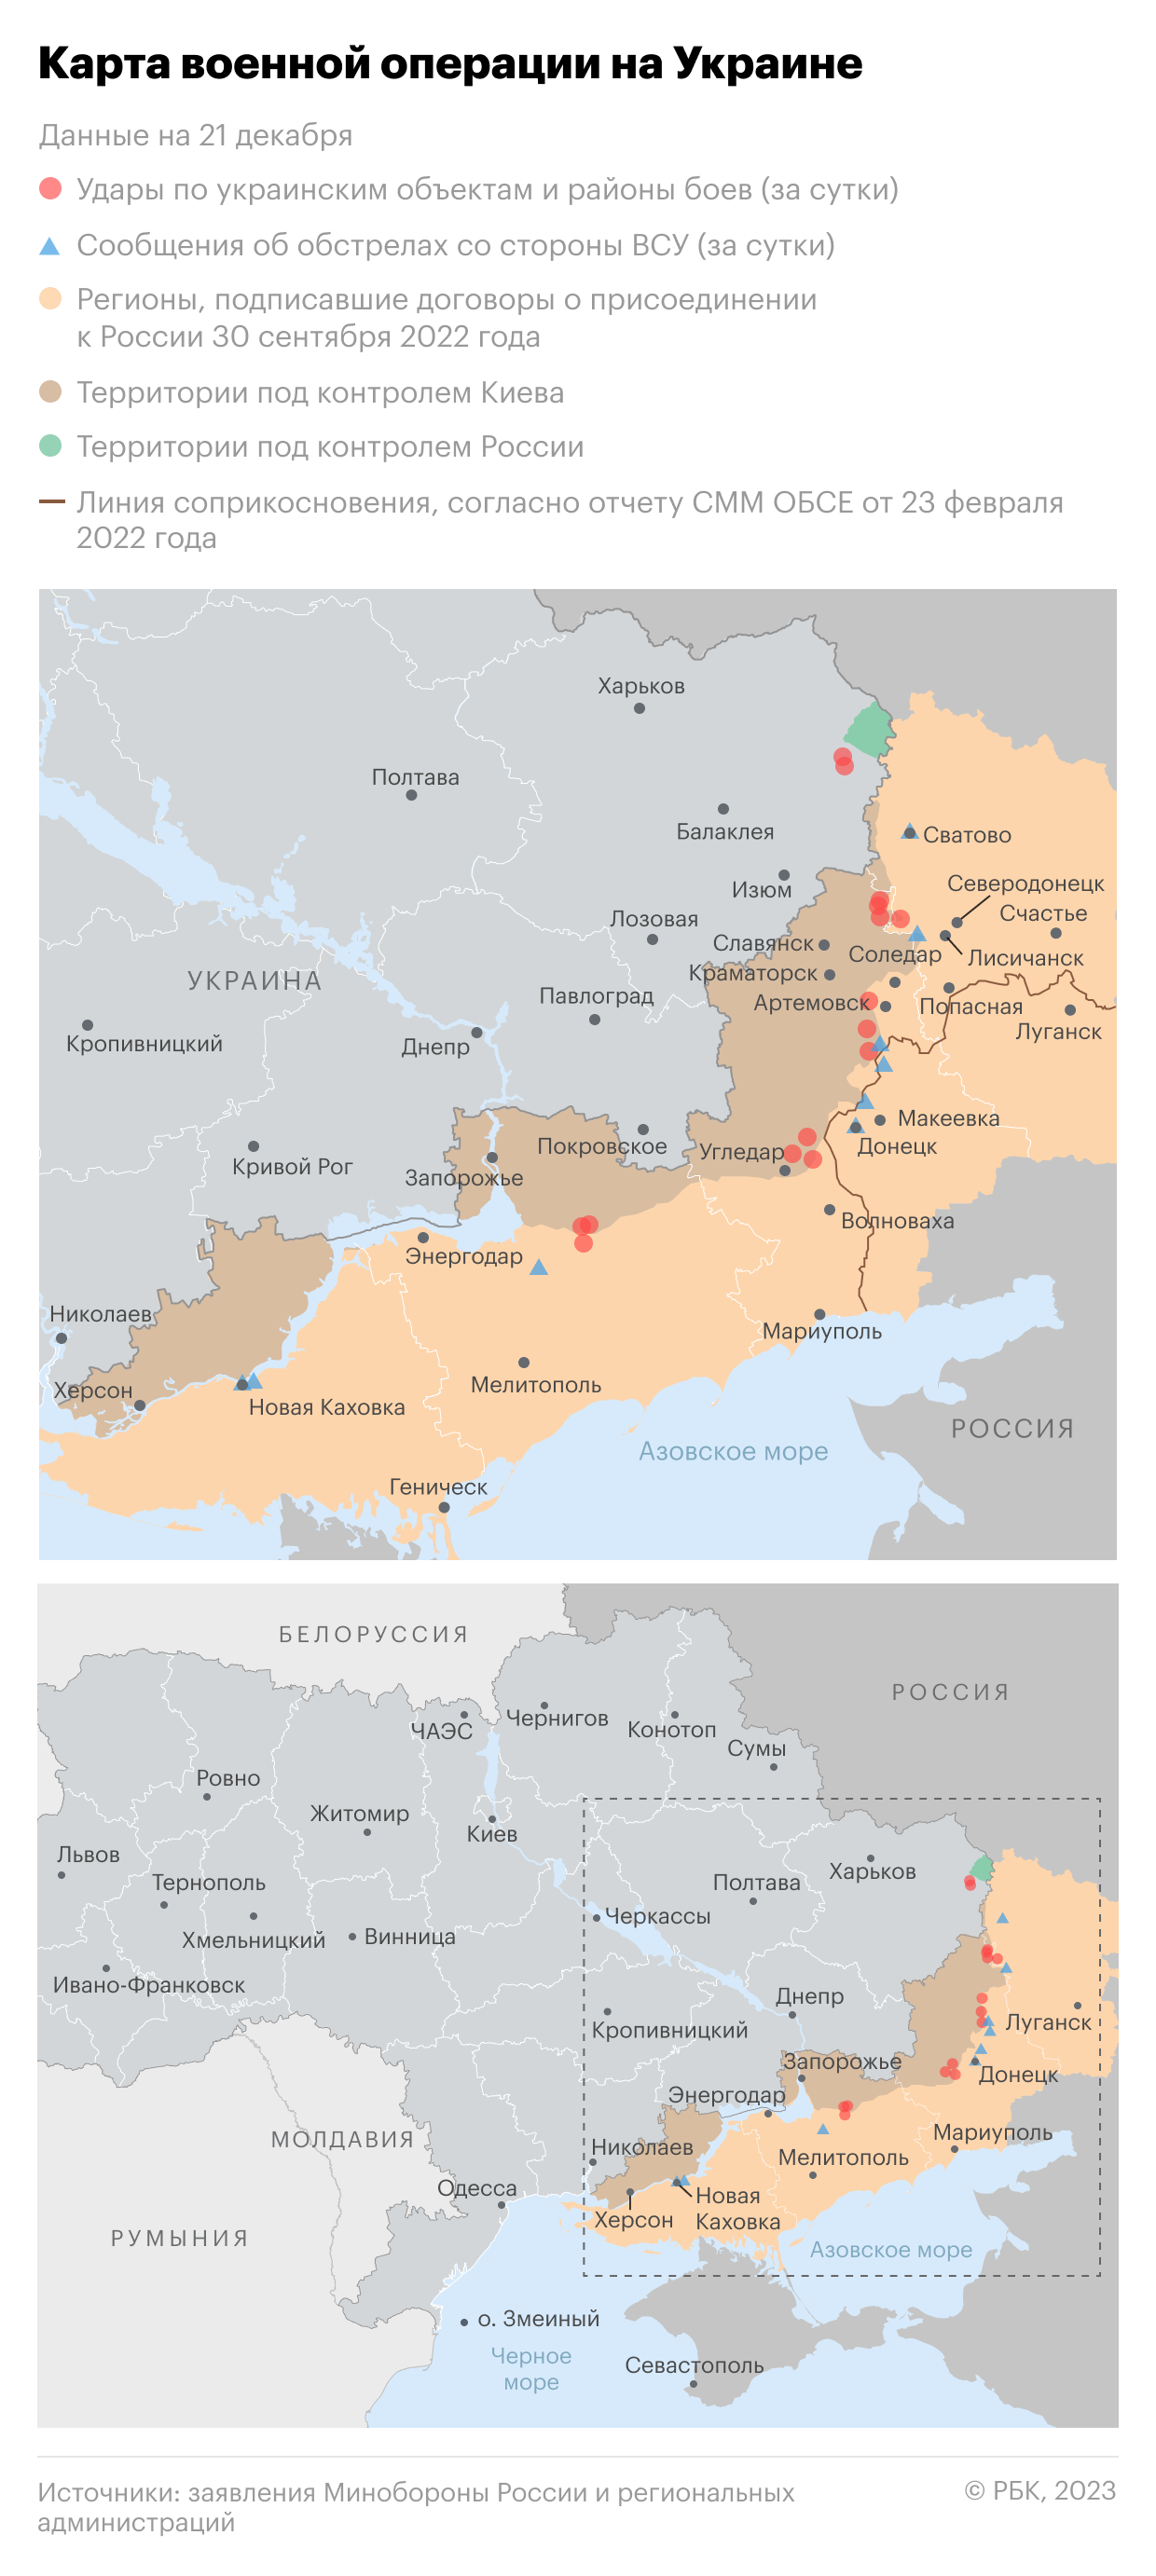 Военная операция на Украине. Карта на 21 декабря